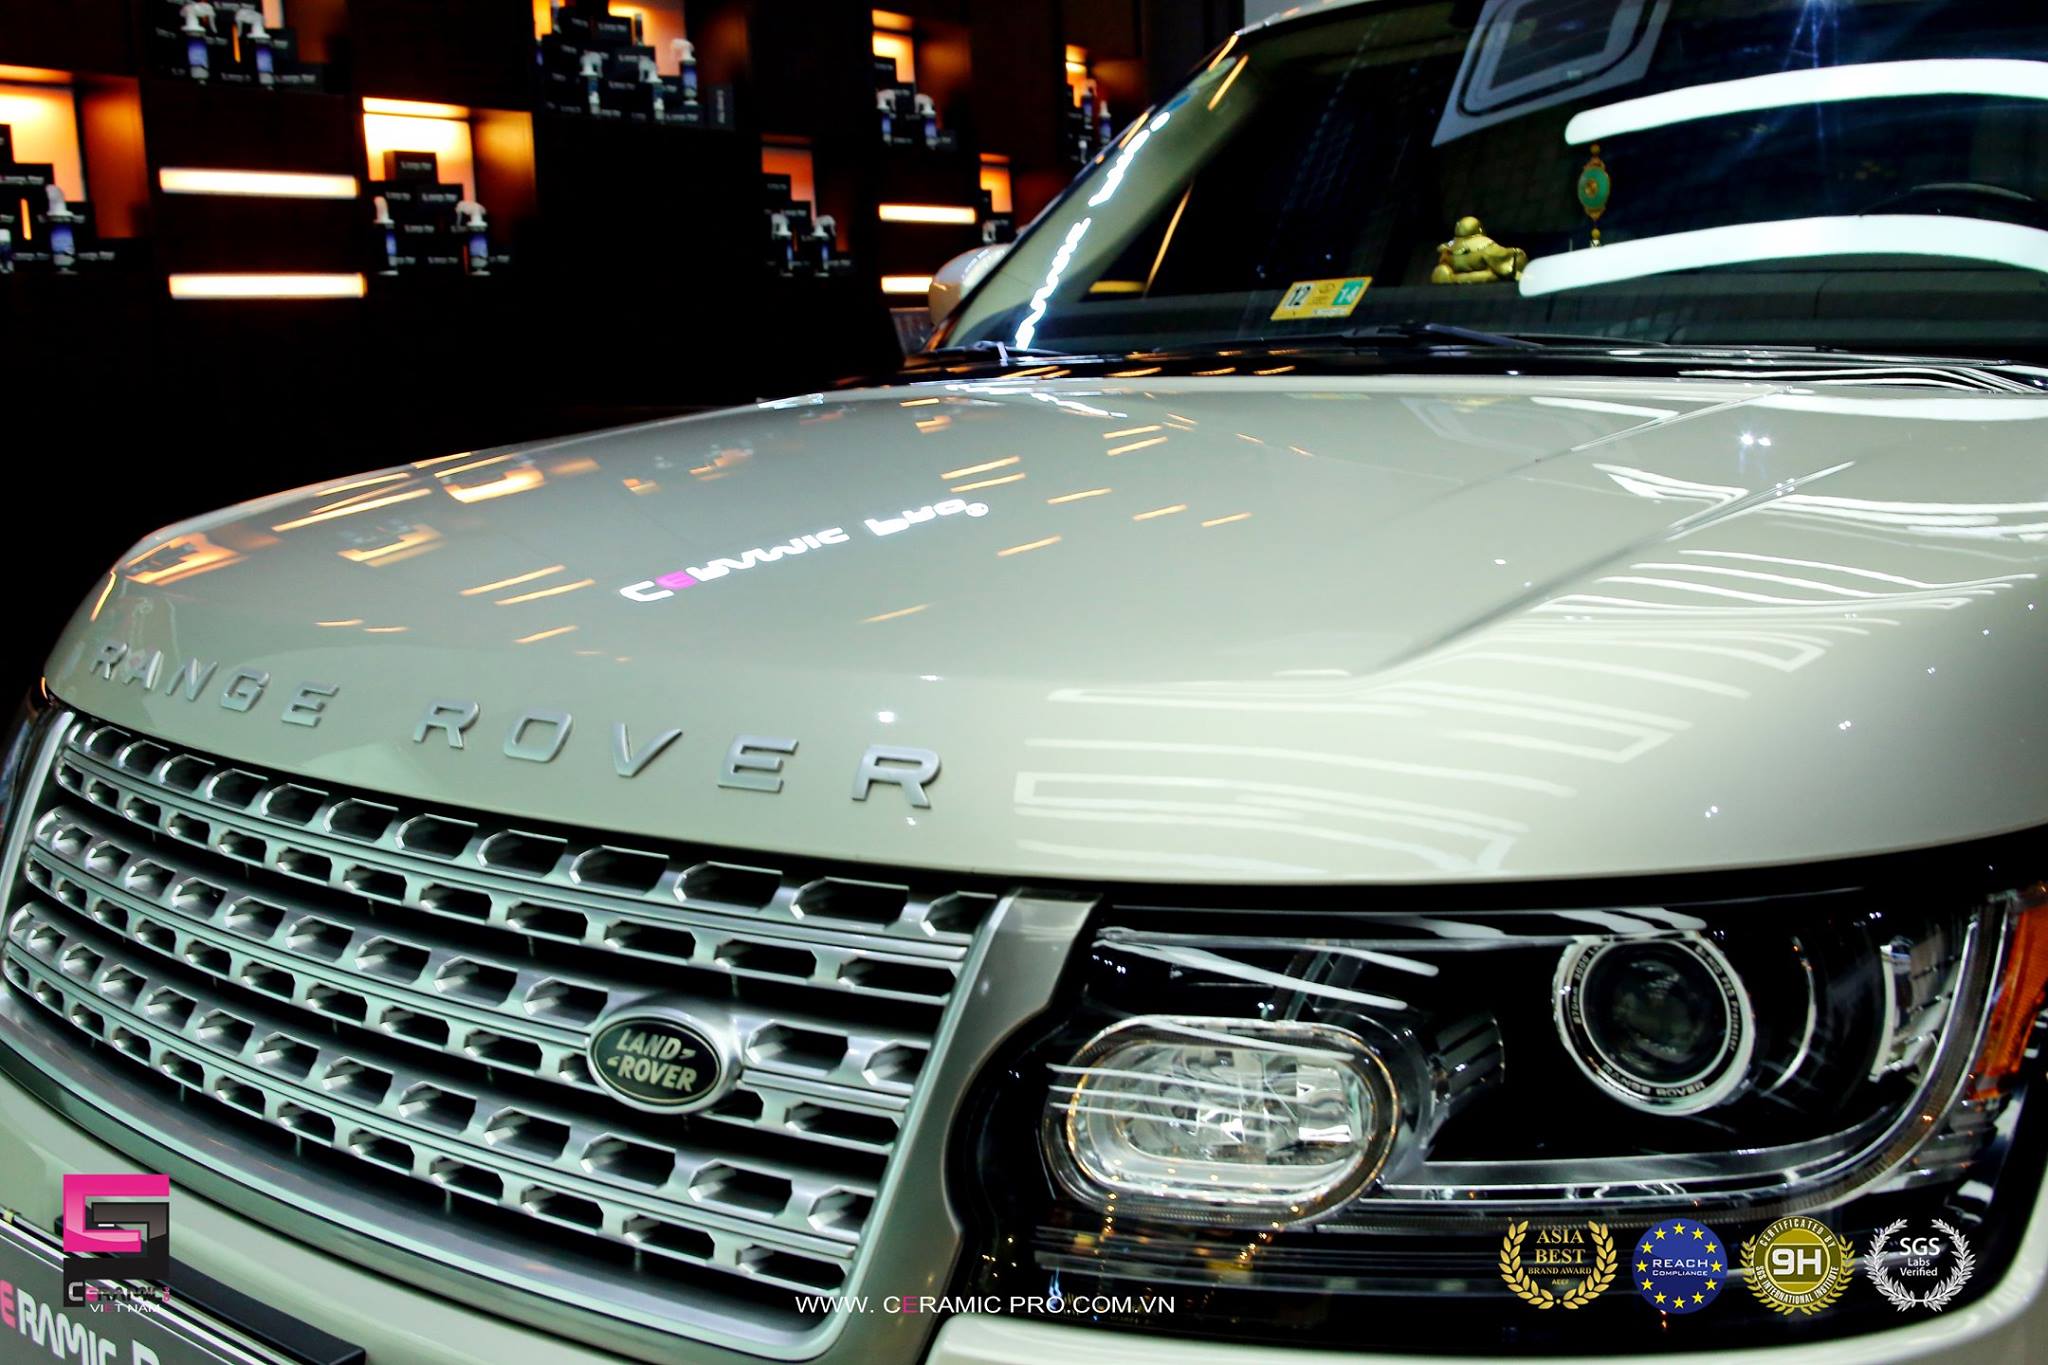 Range Rover Supercharged sử dụng gói PLATINUM (10 lớp phủ Ceramic Pro 9H) cho nội ngoại thất 